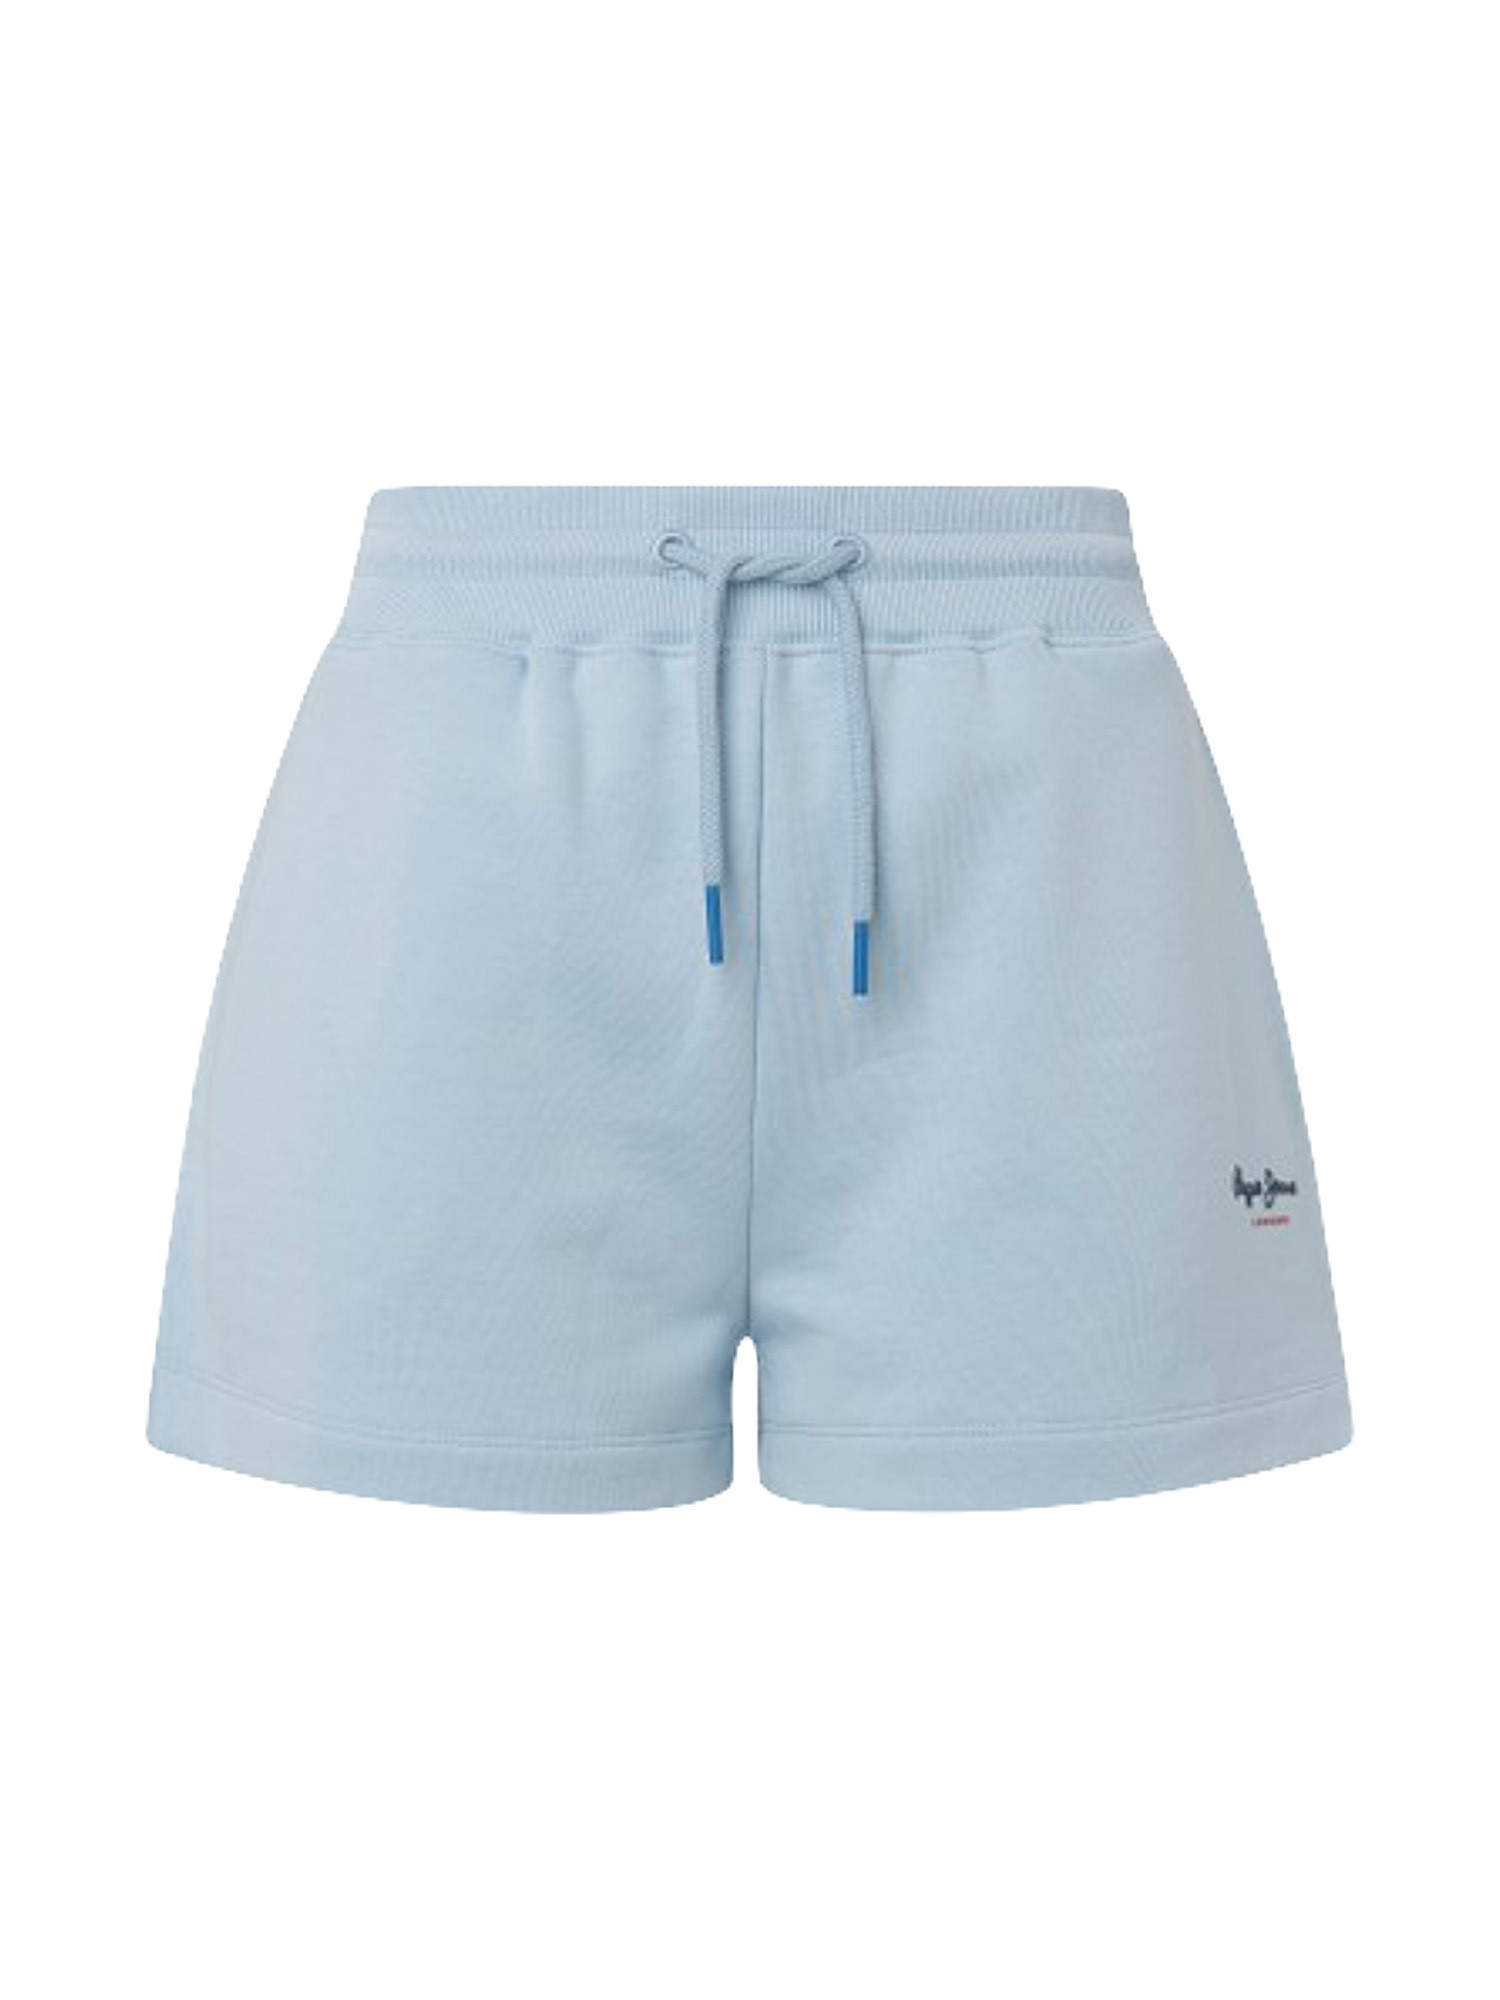 Shorts with elastic waist, Blue Celeste, large image number 0